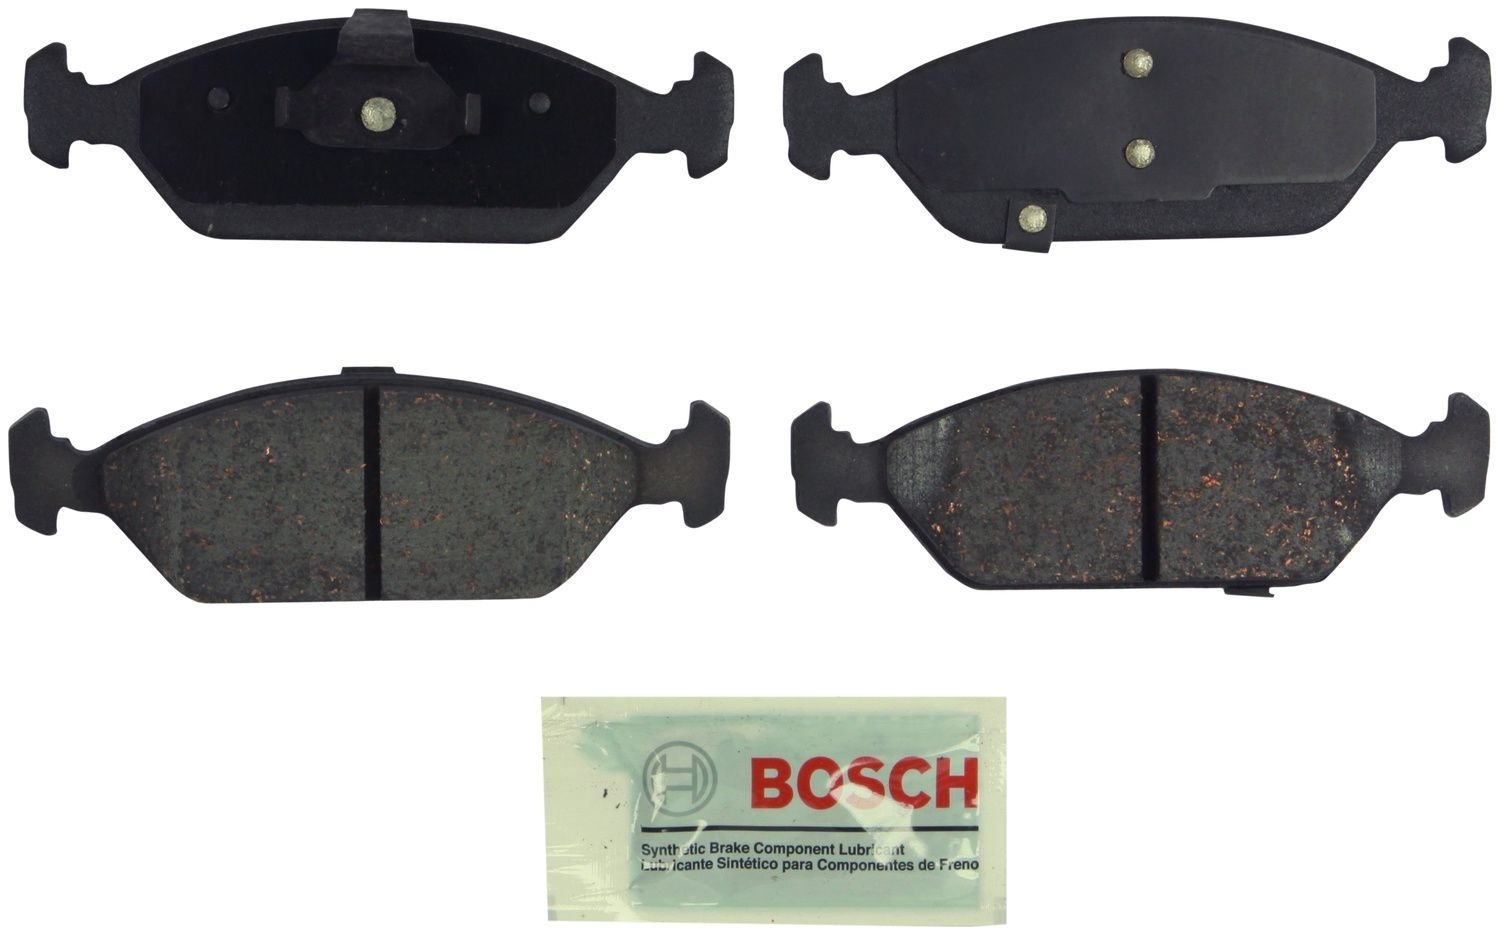 BOSCH BRAKE - Bosch Blue Ceramic Brake Pads (Front) - BQC BE925